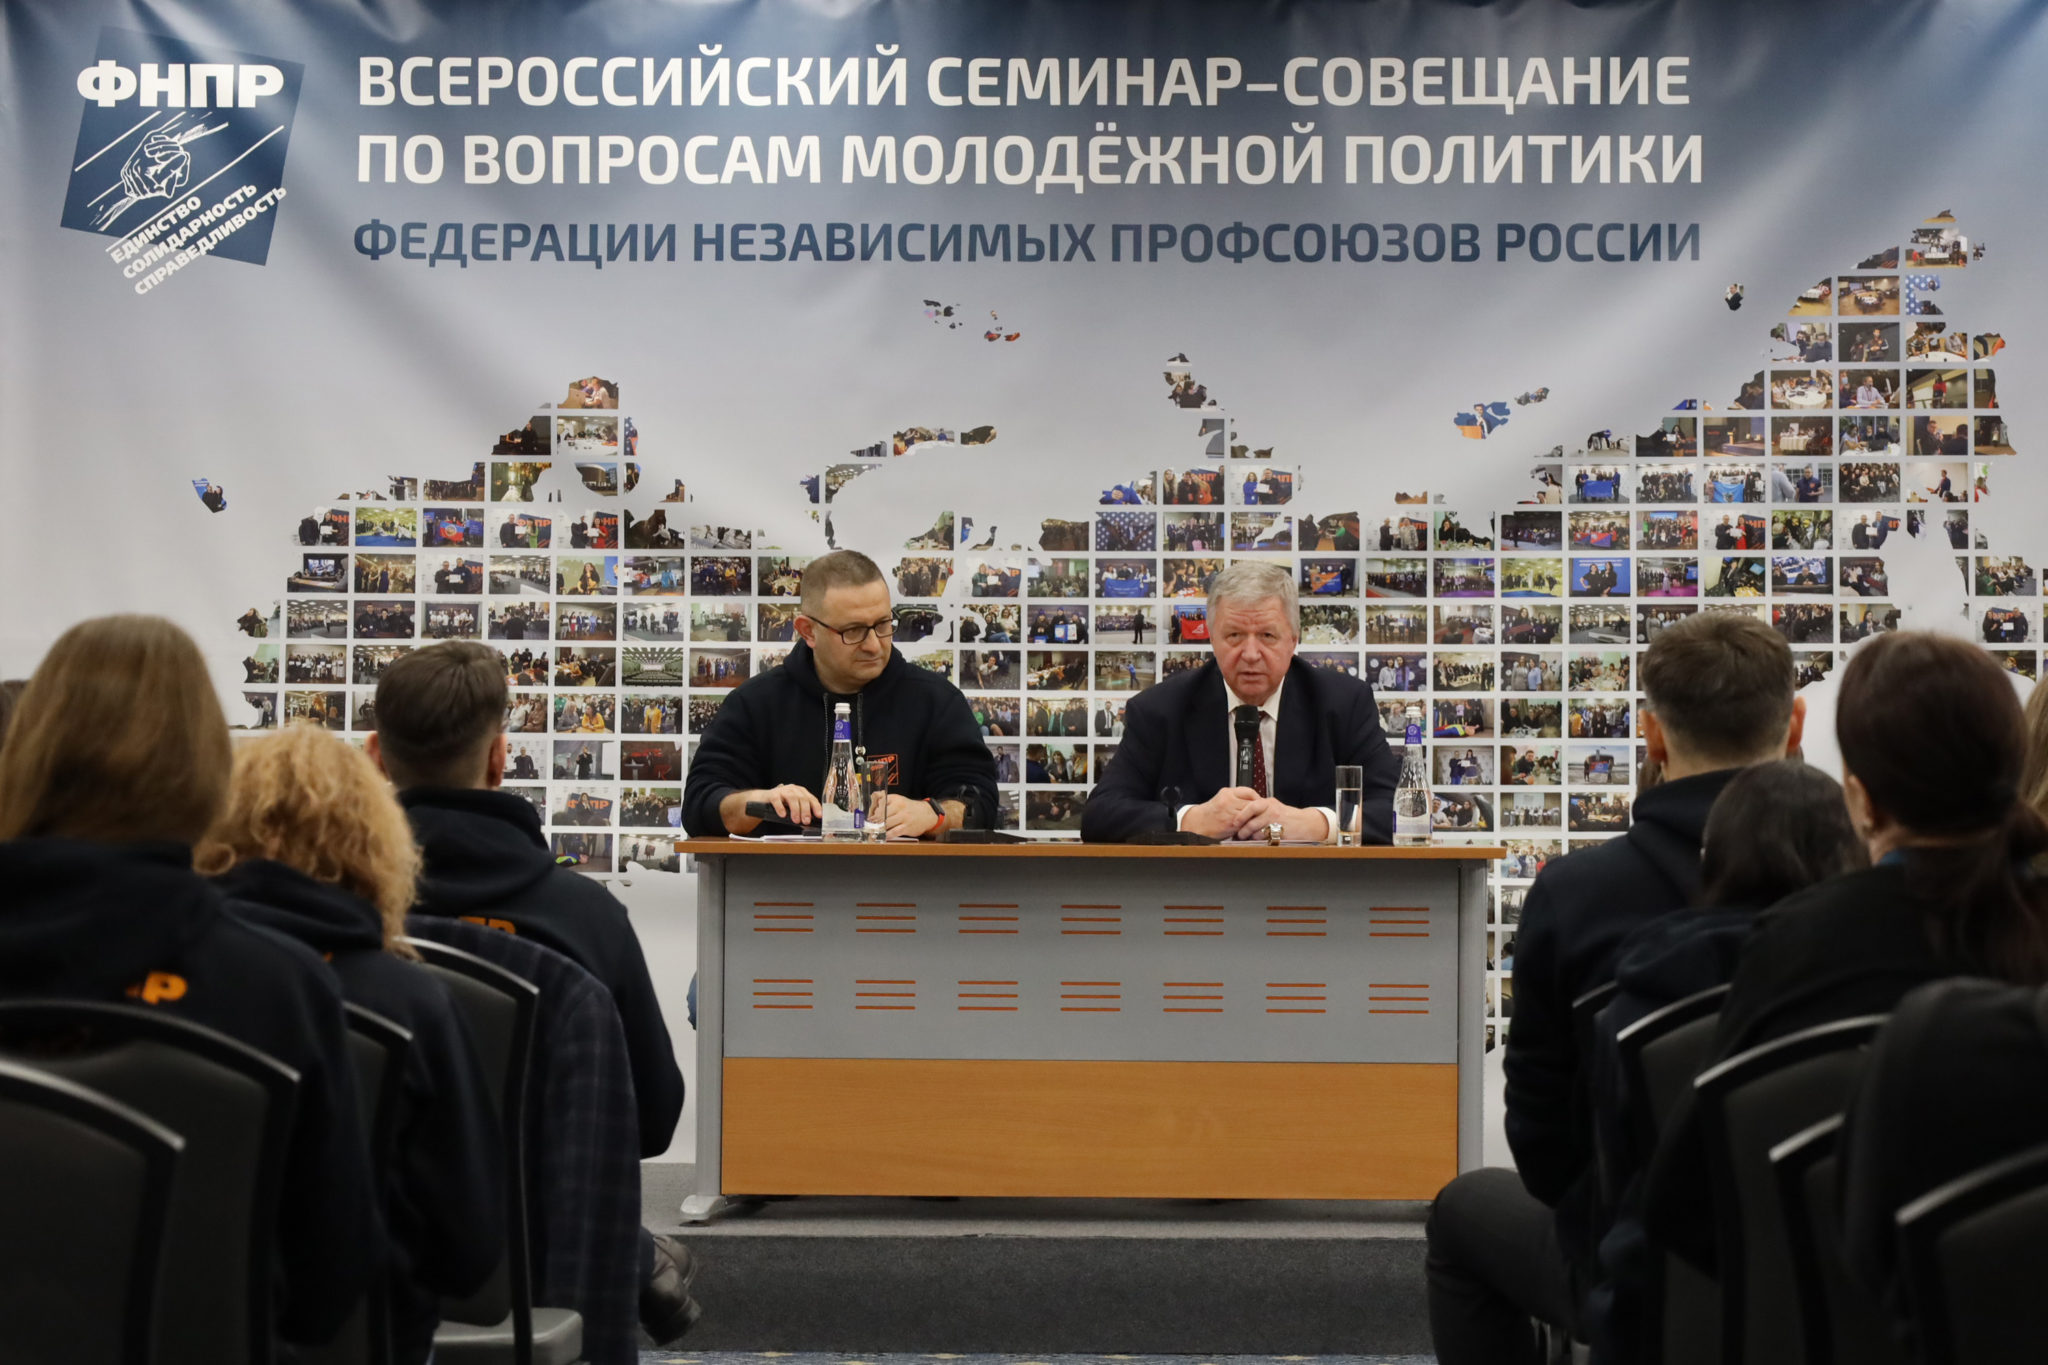 Всероссийский семинар-совещание по вопросам молодежной политики ФНПР собрал 90 штатных специалистов со всей России